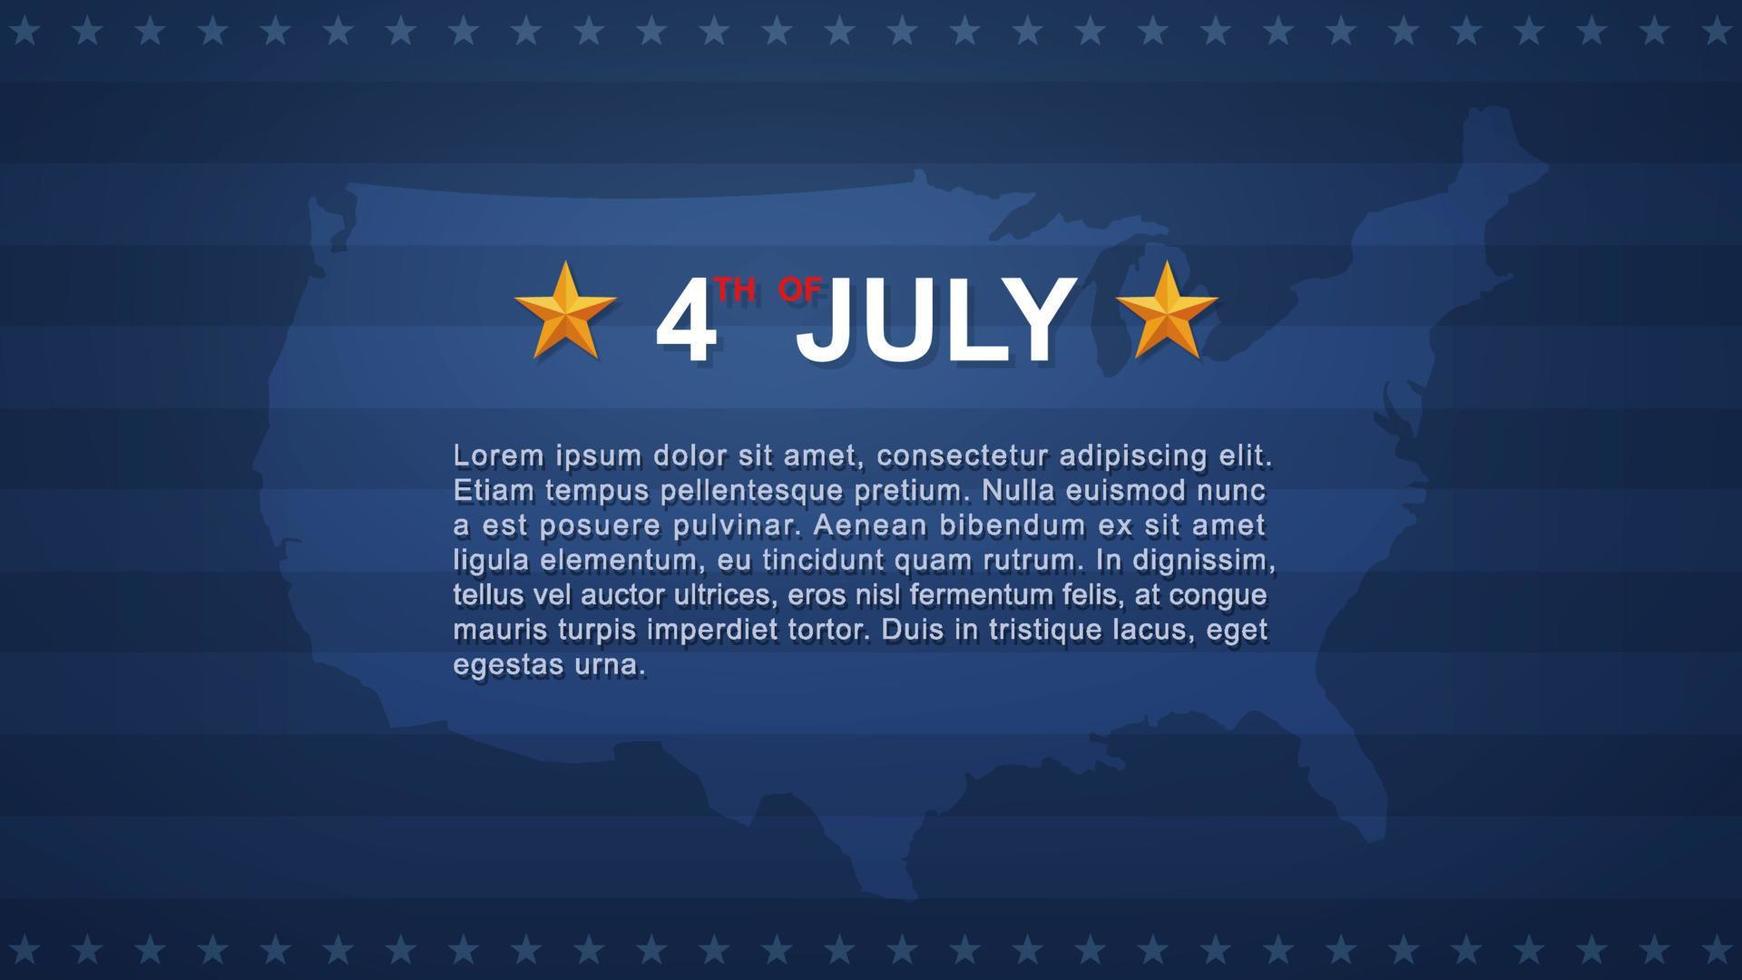 4 juli achtergrond voor usa onafhankelijkheidsdag met blauwe achtergrond en amerikaanse vlag. vector. vector